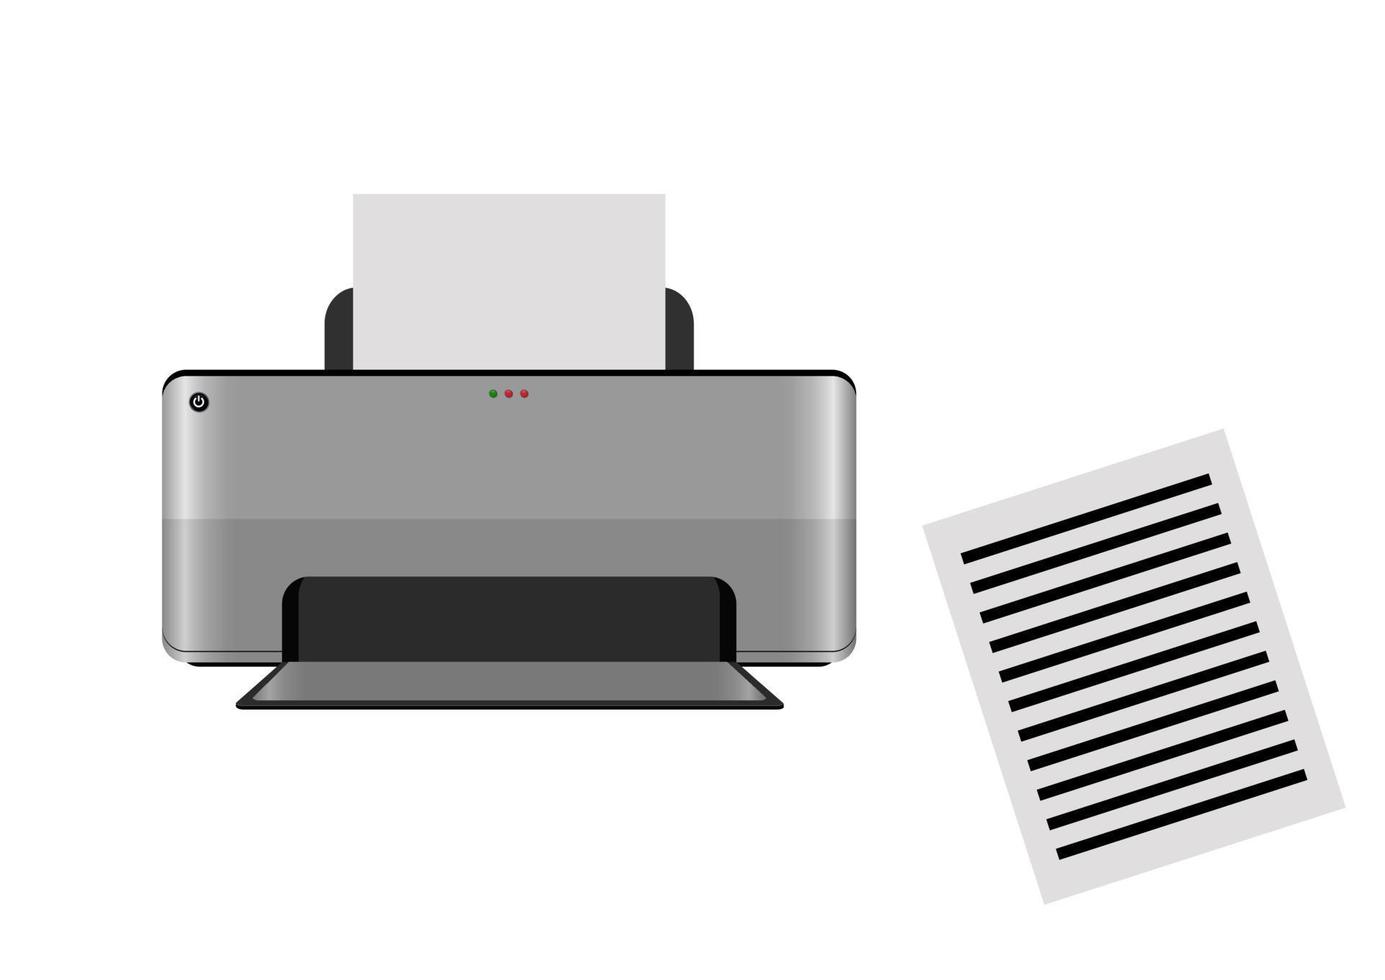 stampante a getto d'inchiostro realistica isoalted su sfondo bianco. illustrazione vettoriale della stampante a getto d'inchiostro